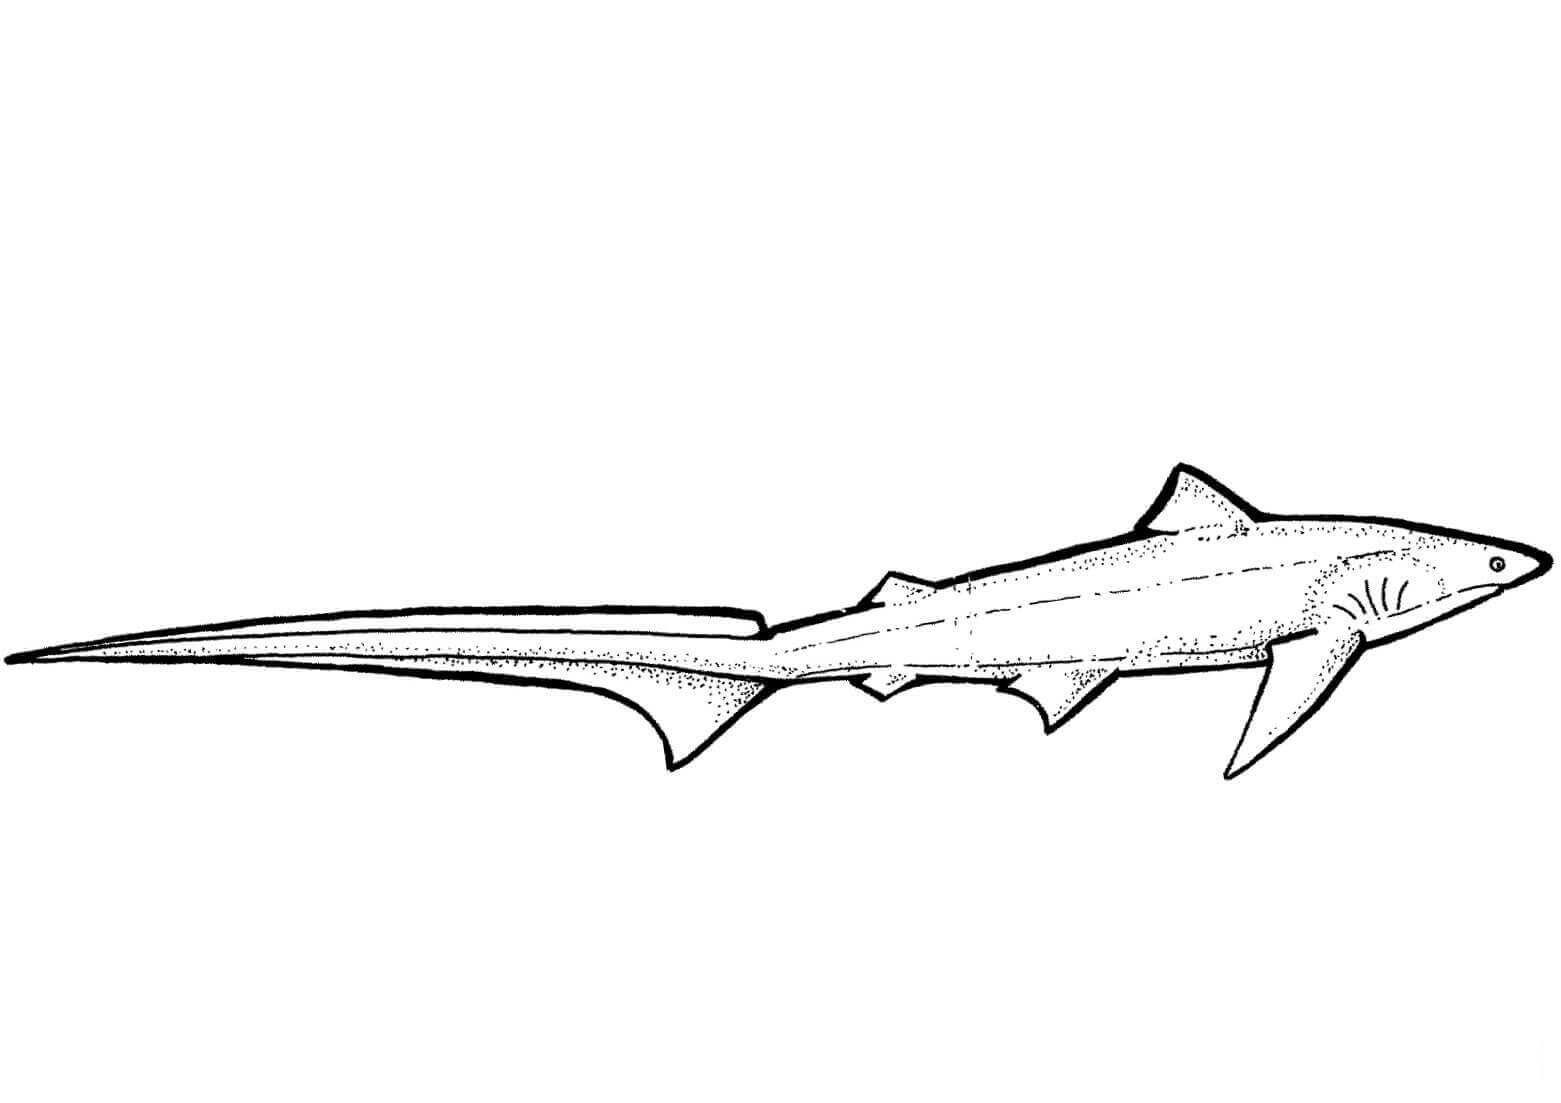 长尾鲨拥有鲨鱼的极长尾巴